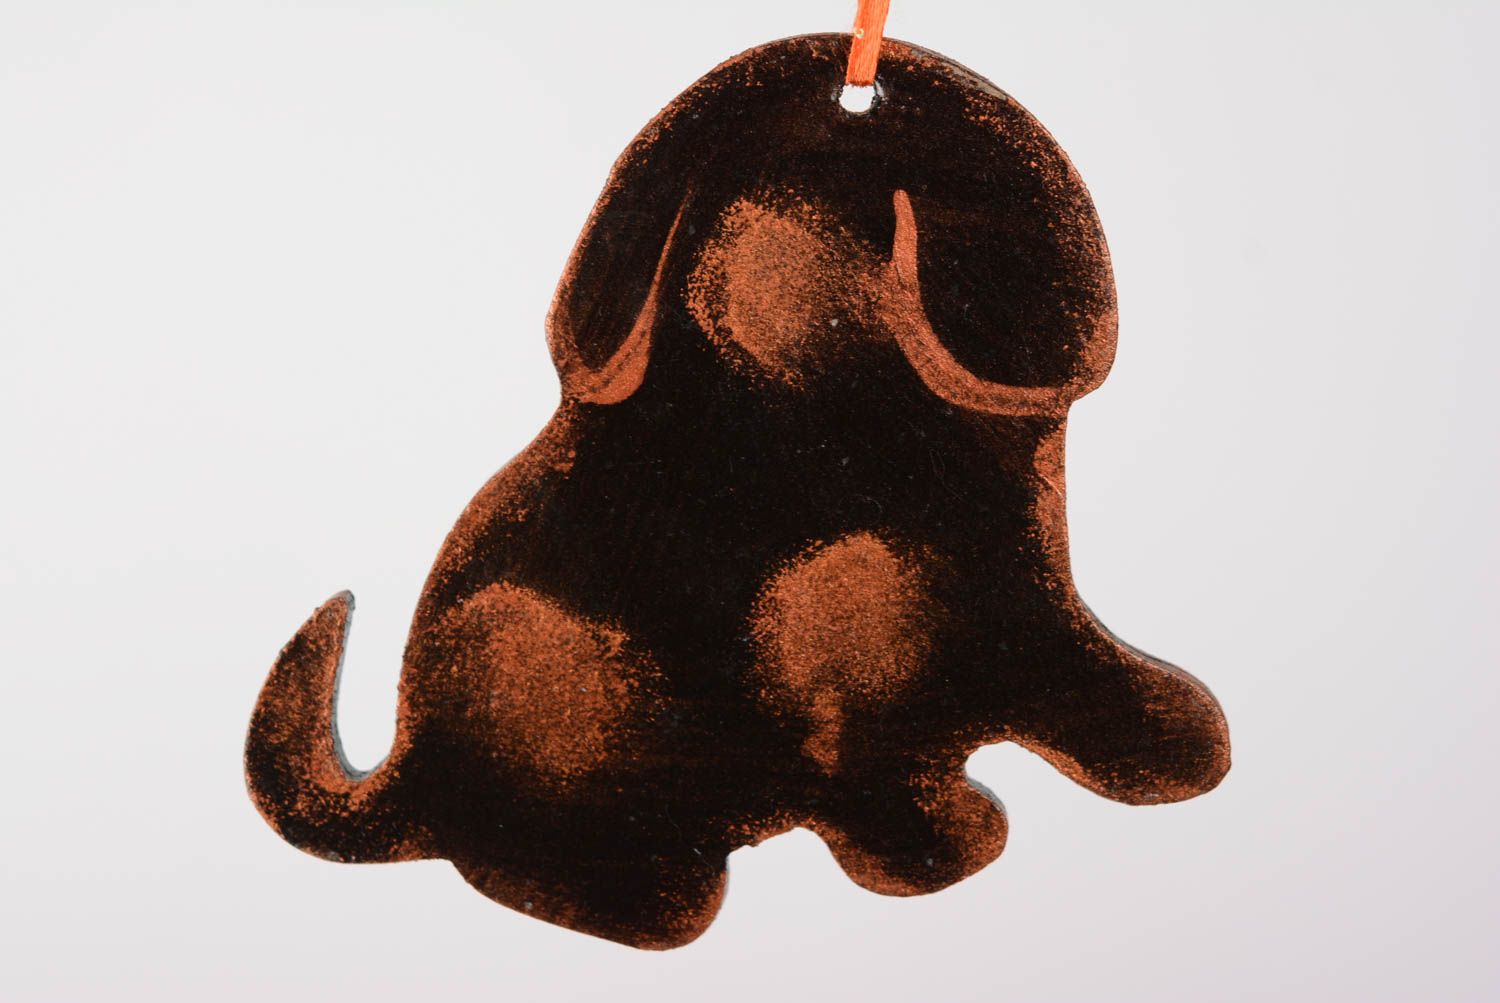 Интерьерная подвеска из ДВП расписанная акриловыми красками в виде шоколадного пса  фото 3